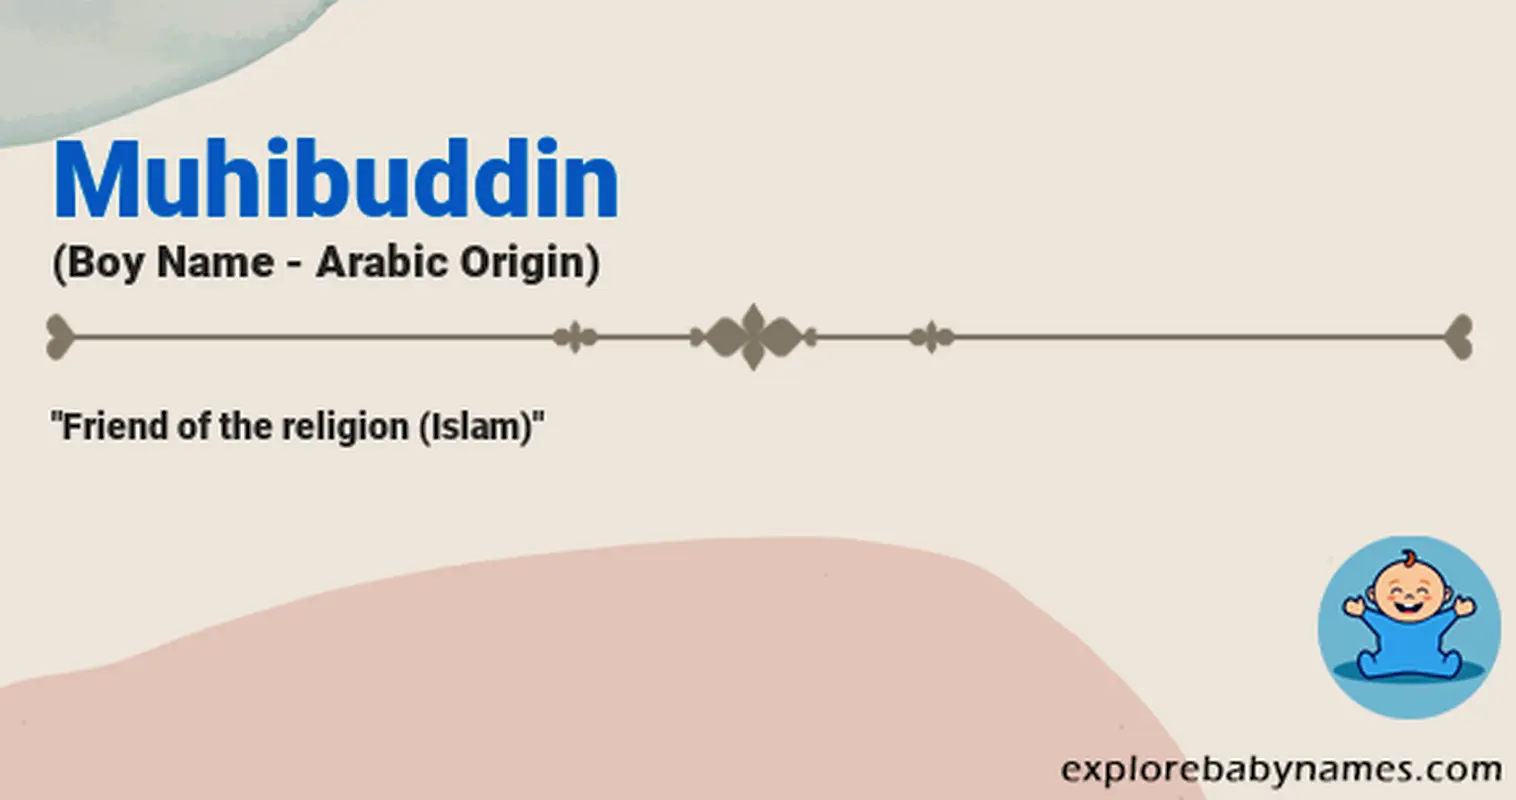 Meaning of Muhibuddin